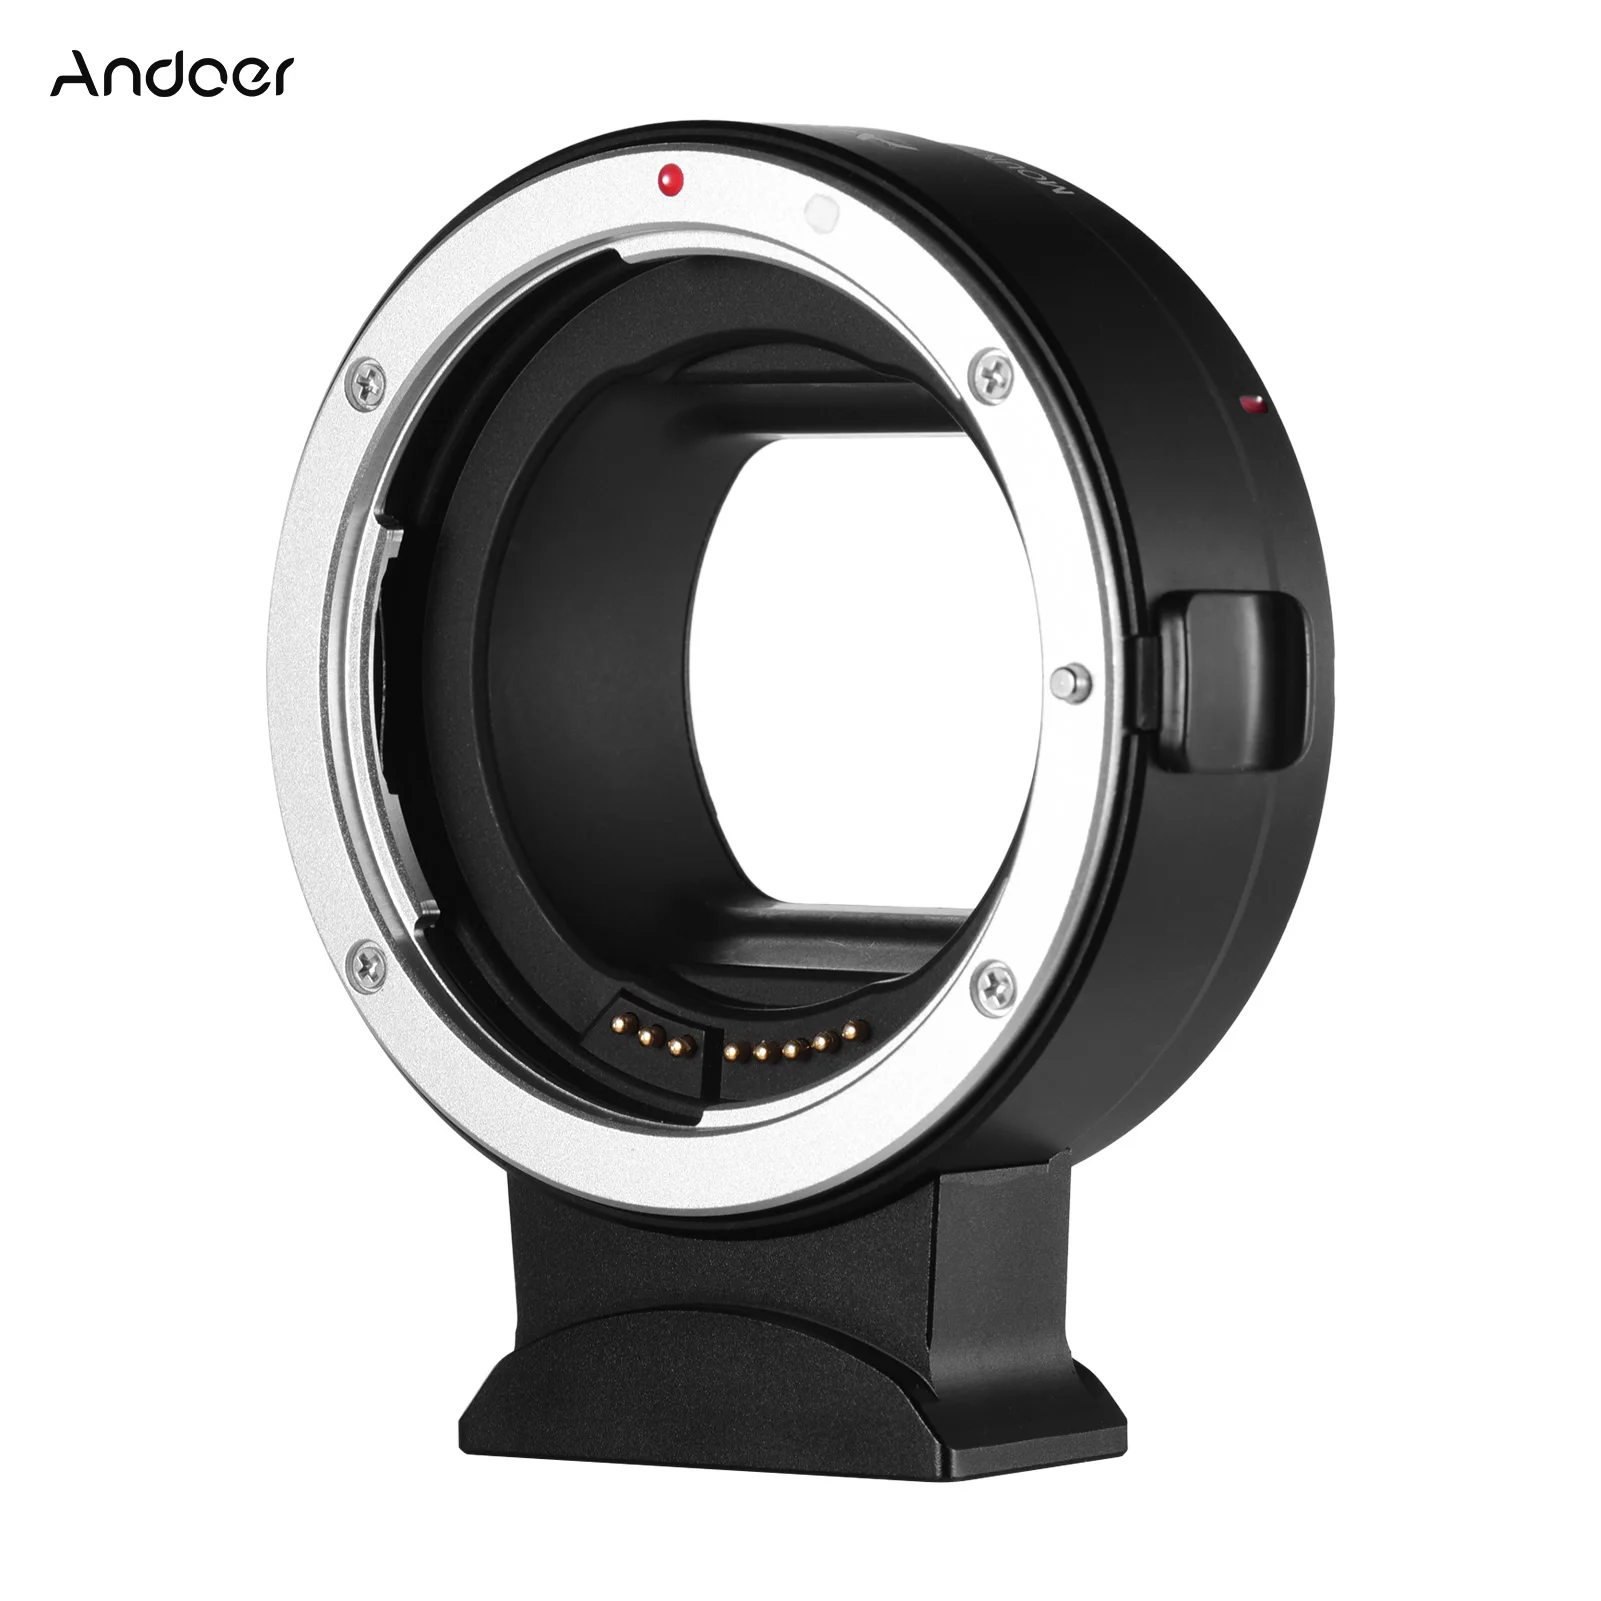 

Andoer EF-EOSR Автофокус Камера кольцо-адаптер для объектива с электронным отверстием Управление объектив IS USM для Canon EF EF-S объектив с креплением д...